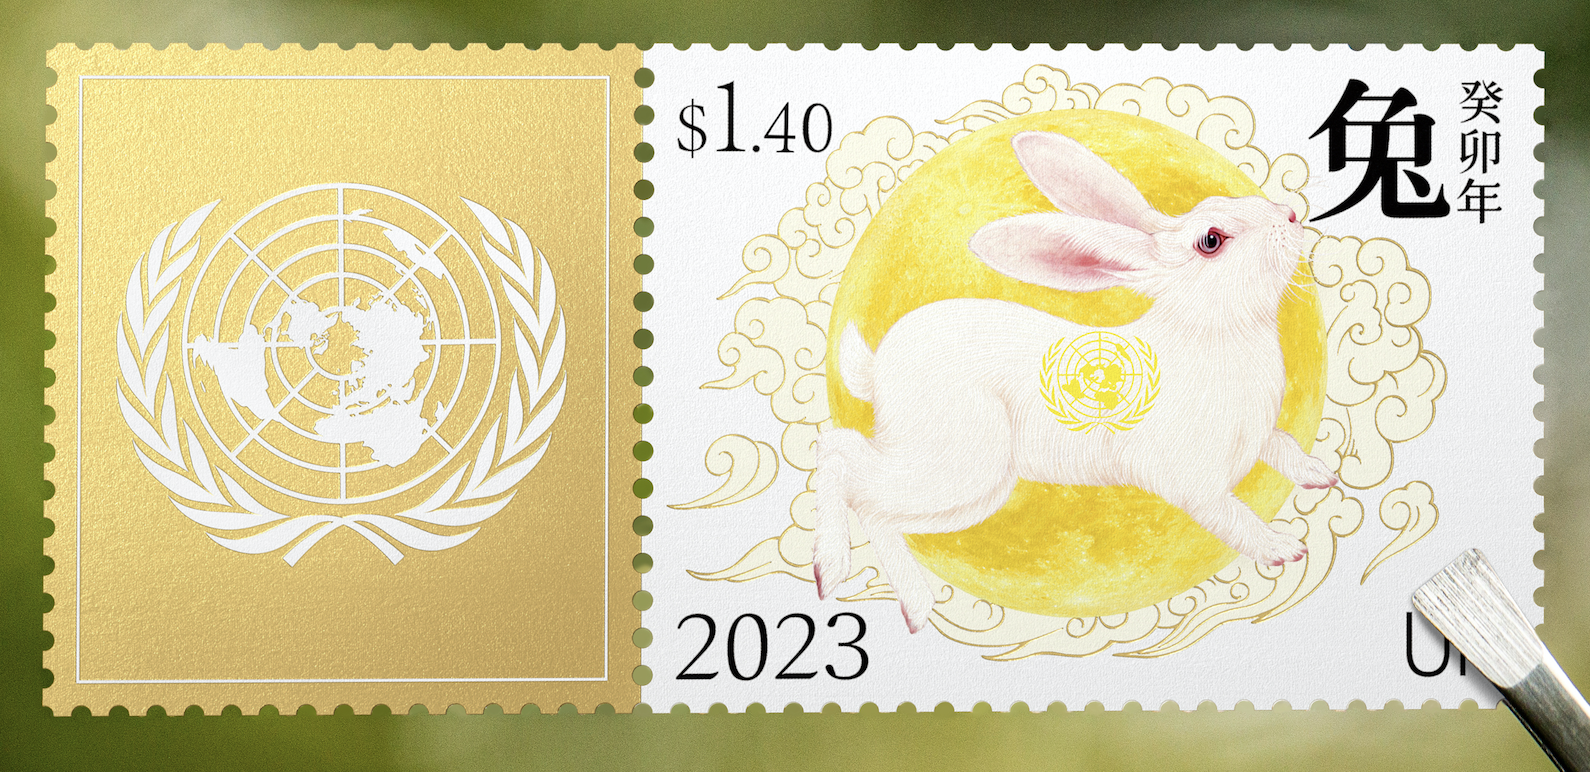 联合国发行兔年生肖邮票 设计师潘虎来自中国：大家可从兔子皮毛中看到很多细节